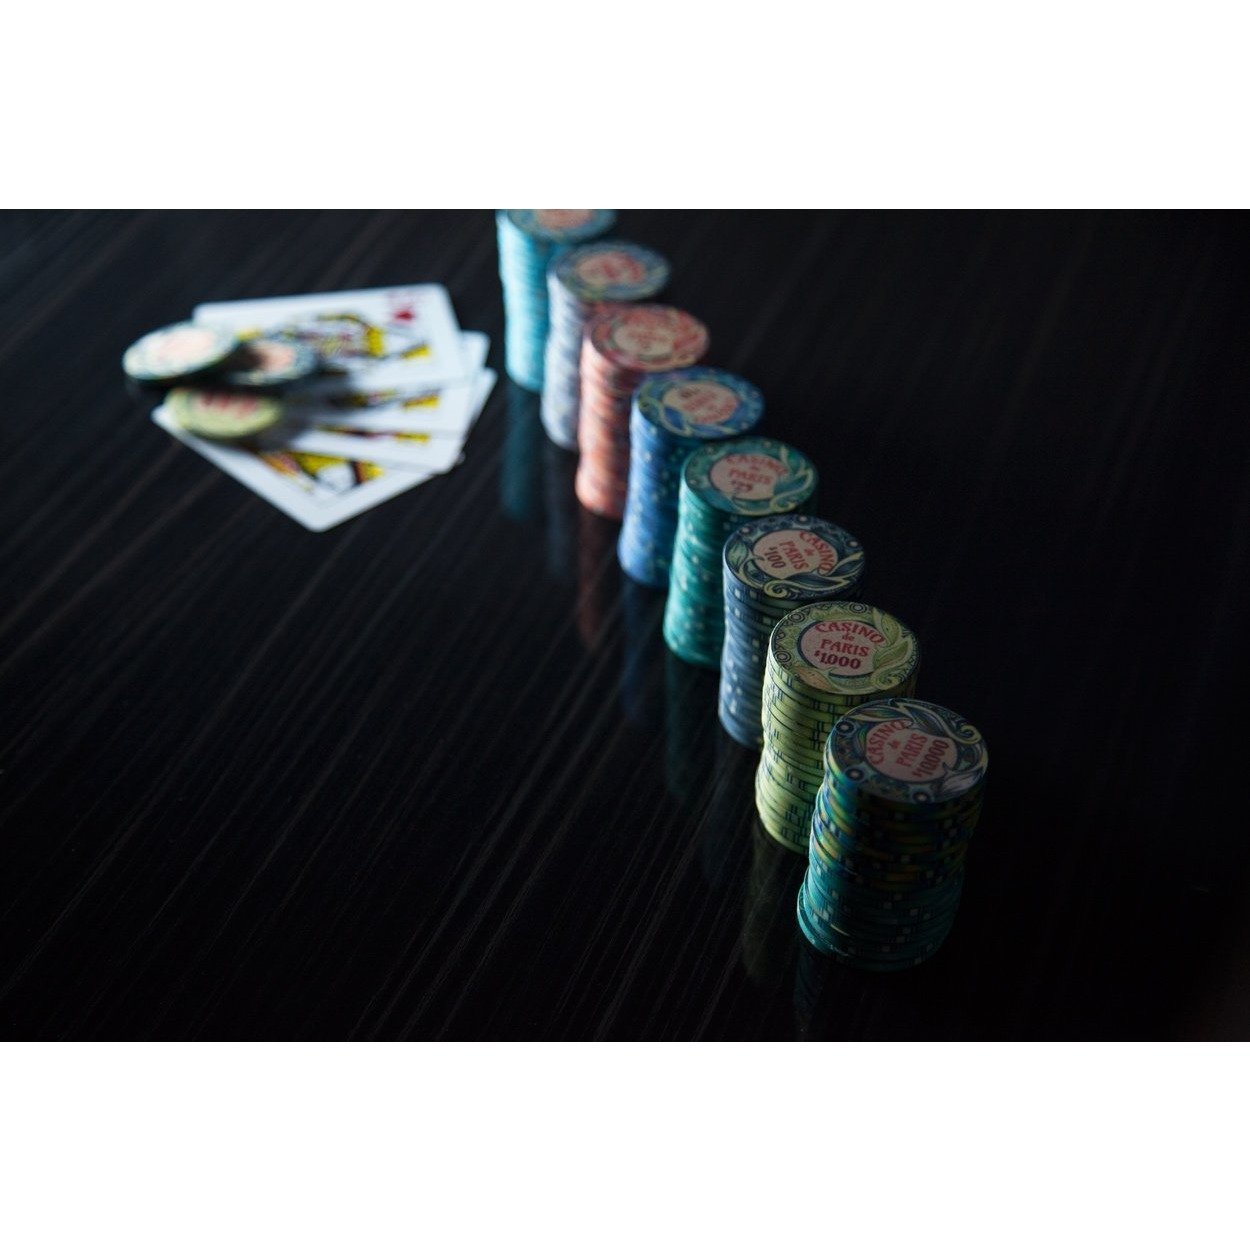 BBO Poker Tables Casino De Paris 500 Piece Ceramic Poker Chip Set 10 gram - Gaming Blaze